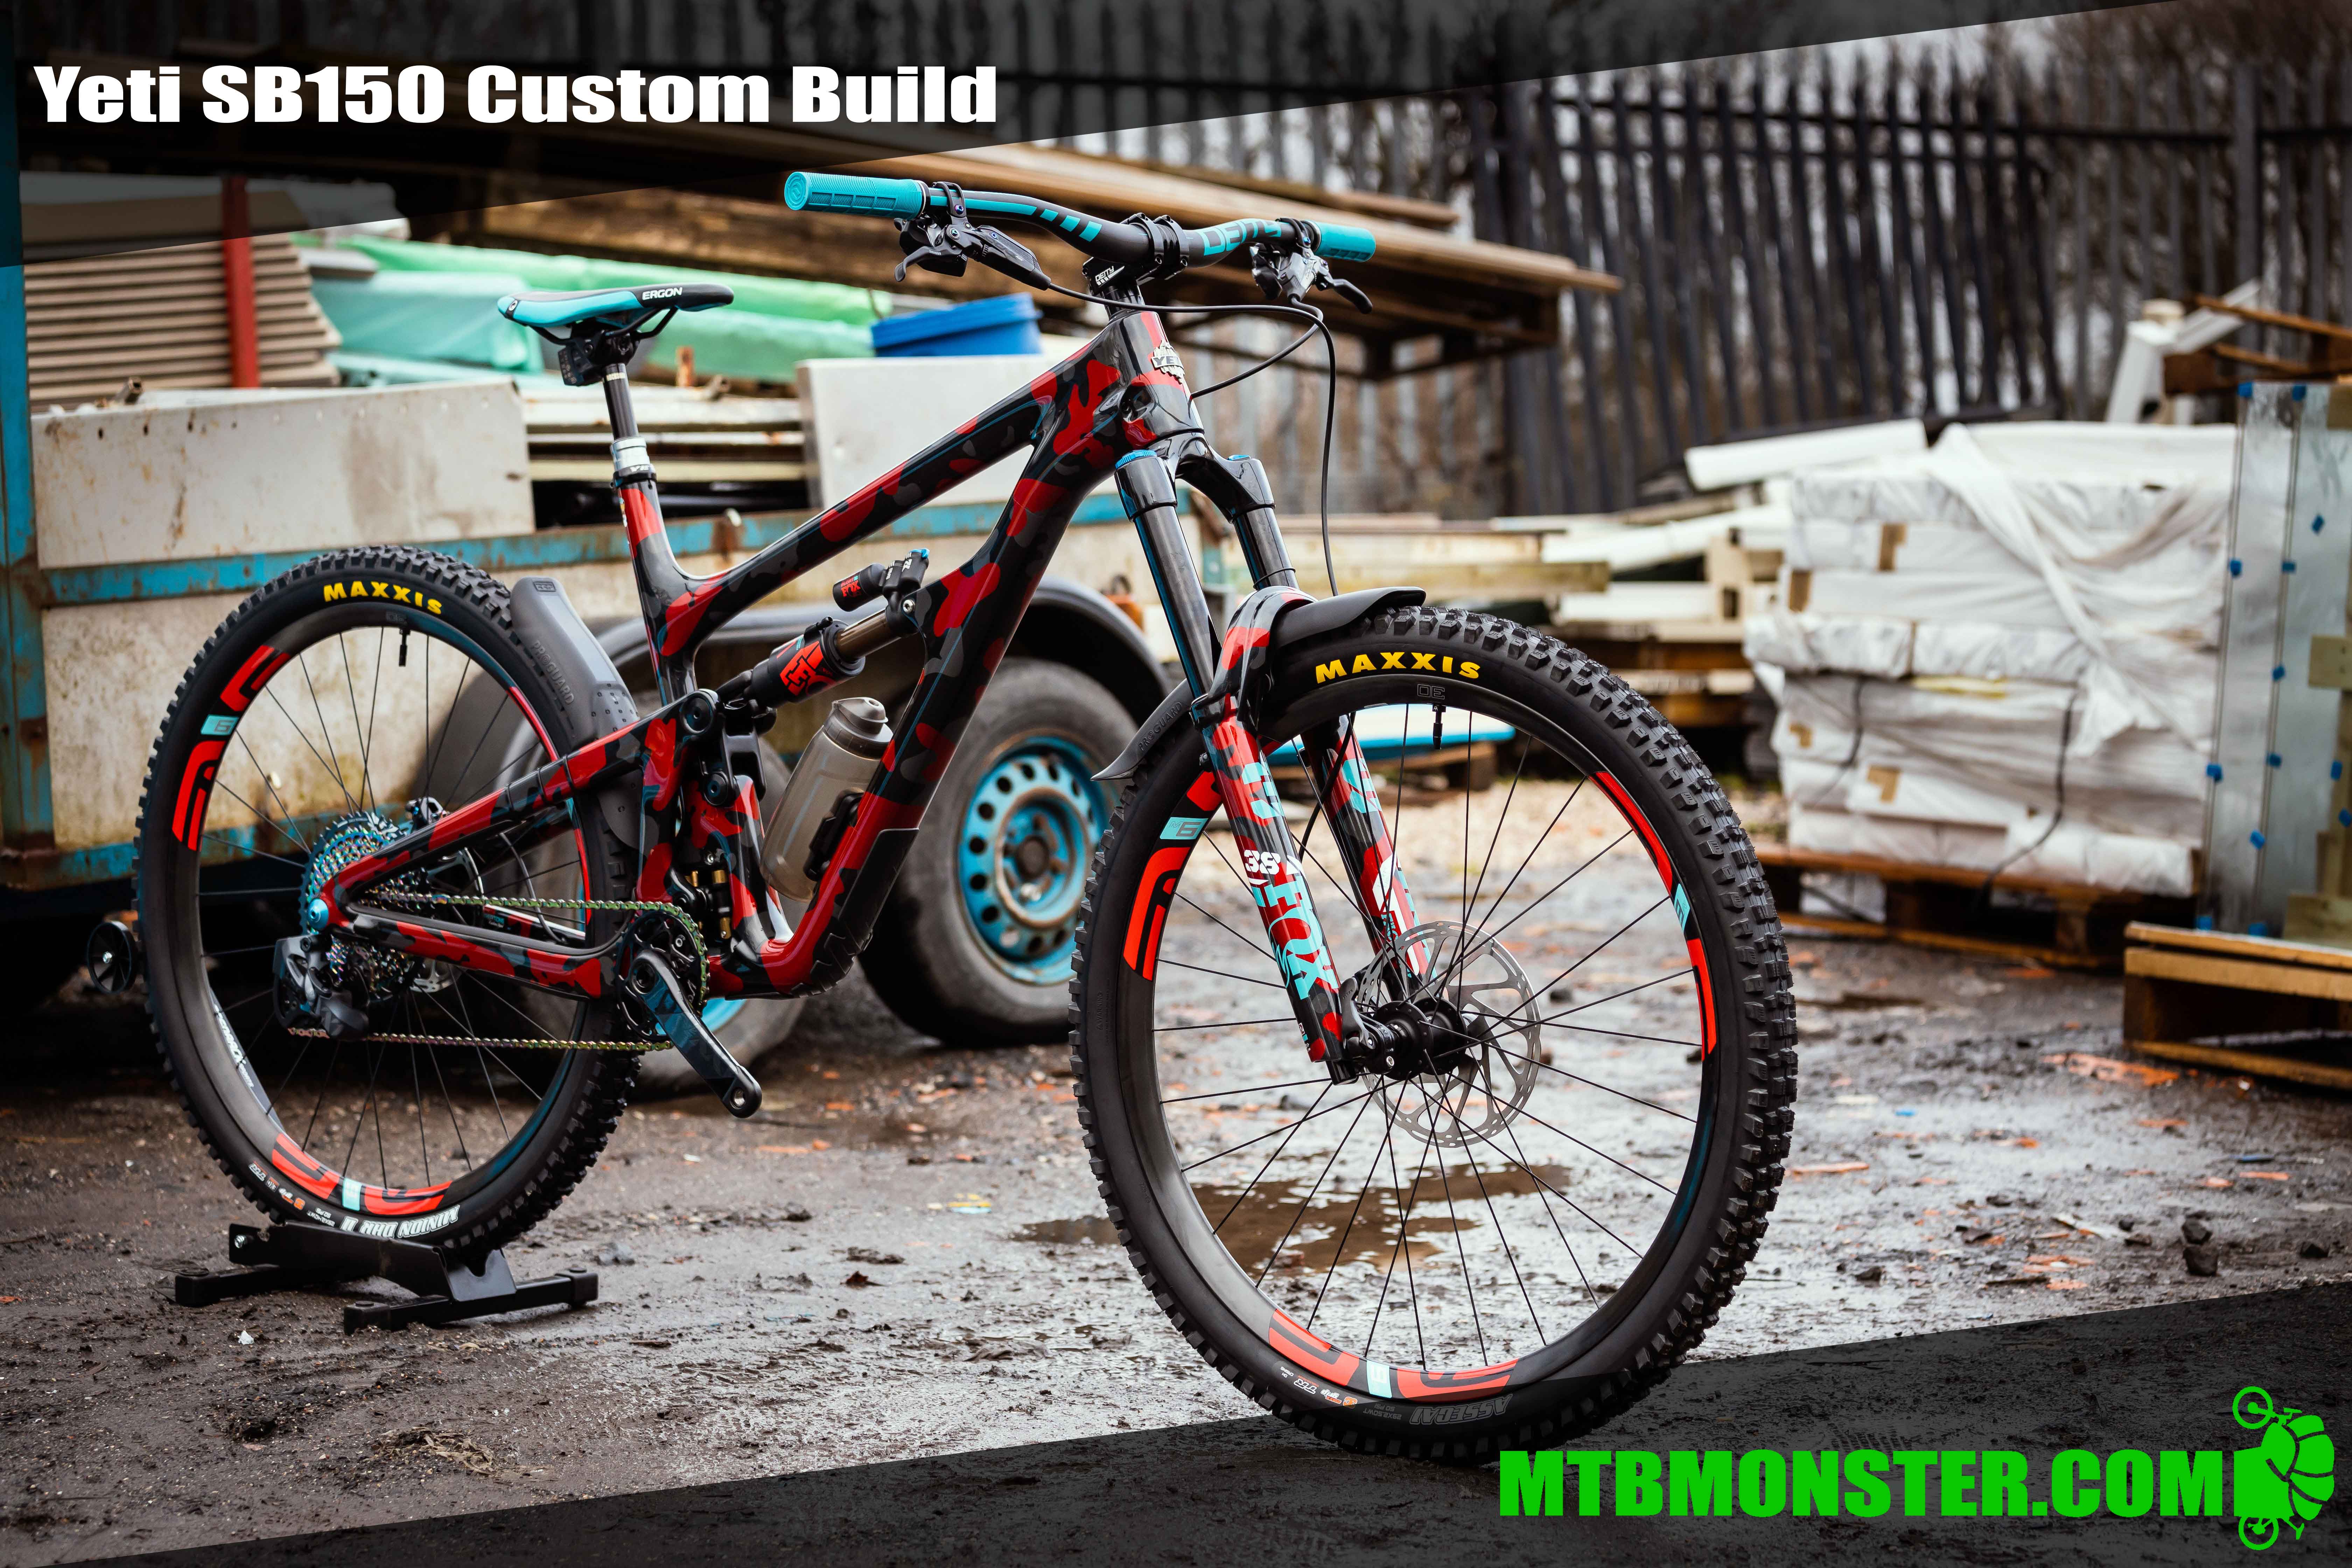 https://mtbmonster.com/product_images/uploaded_images/yeti-sb150-custom-bike-sideshot-1mb.jpg